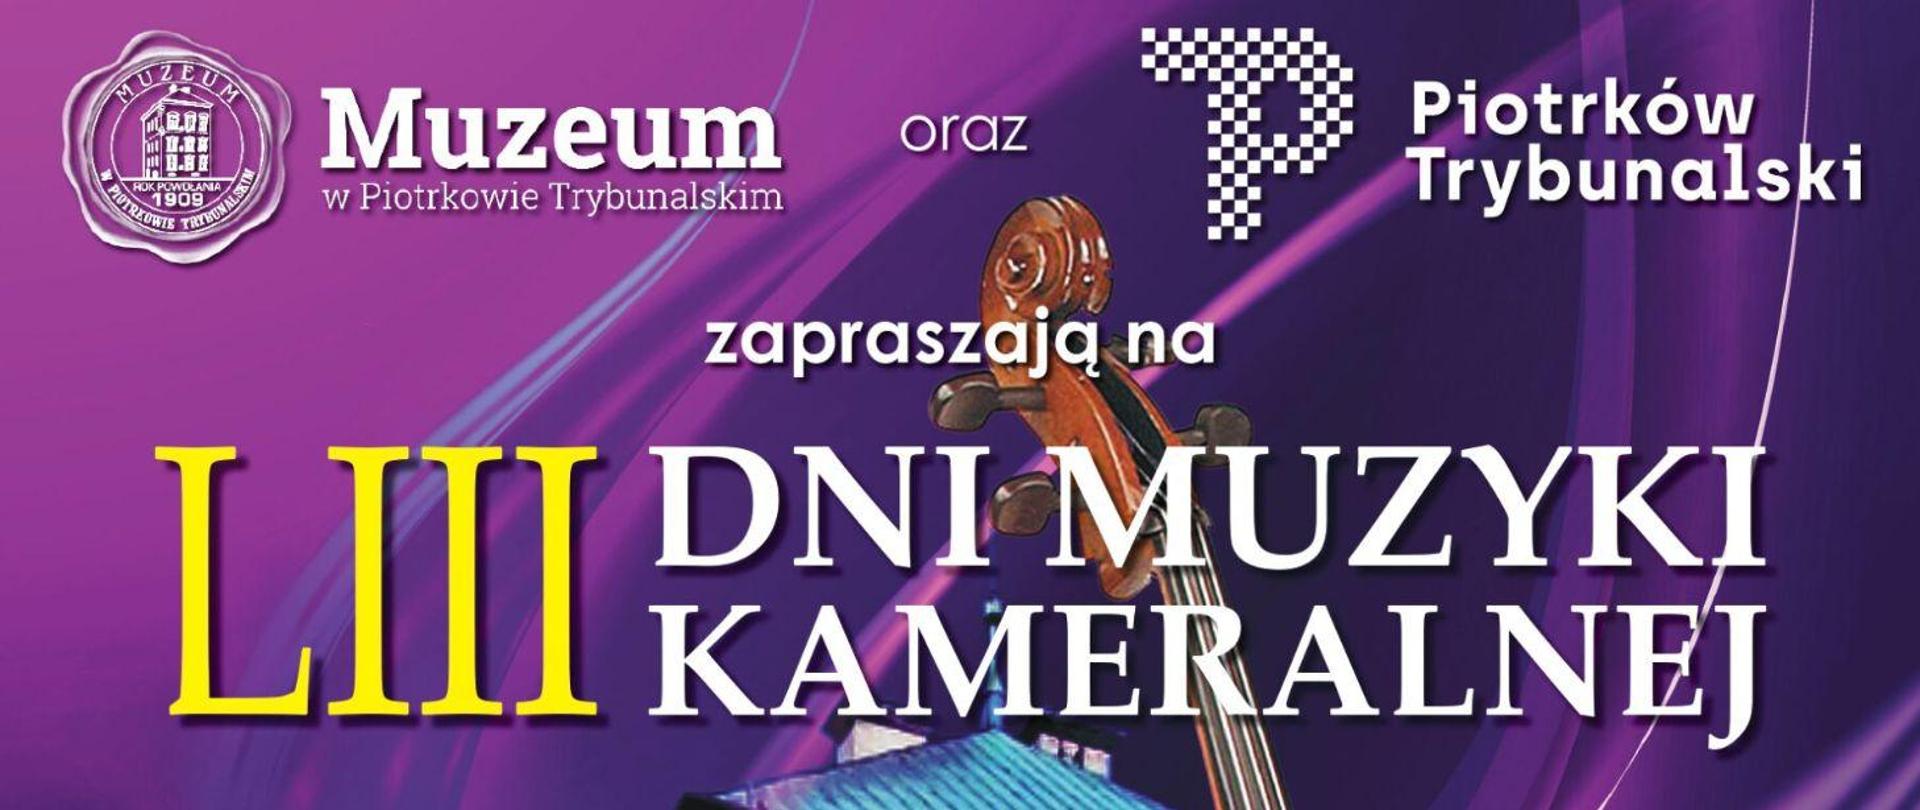 Muzeum w Piotrkowie Trybunalskim oraz Piotrków Trybunalski zapraszają na LIII Dni Muzyki Kameralnej